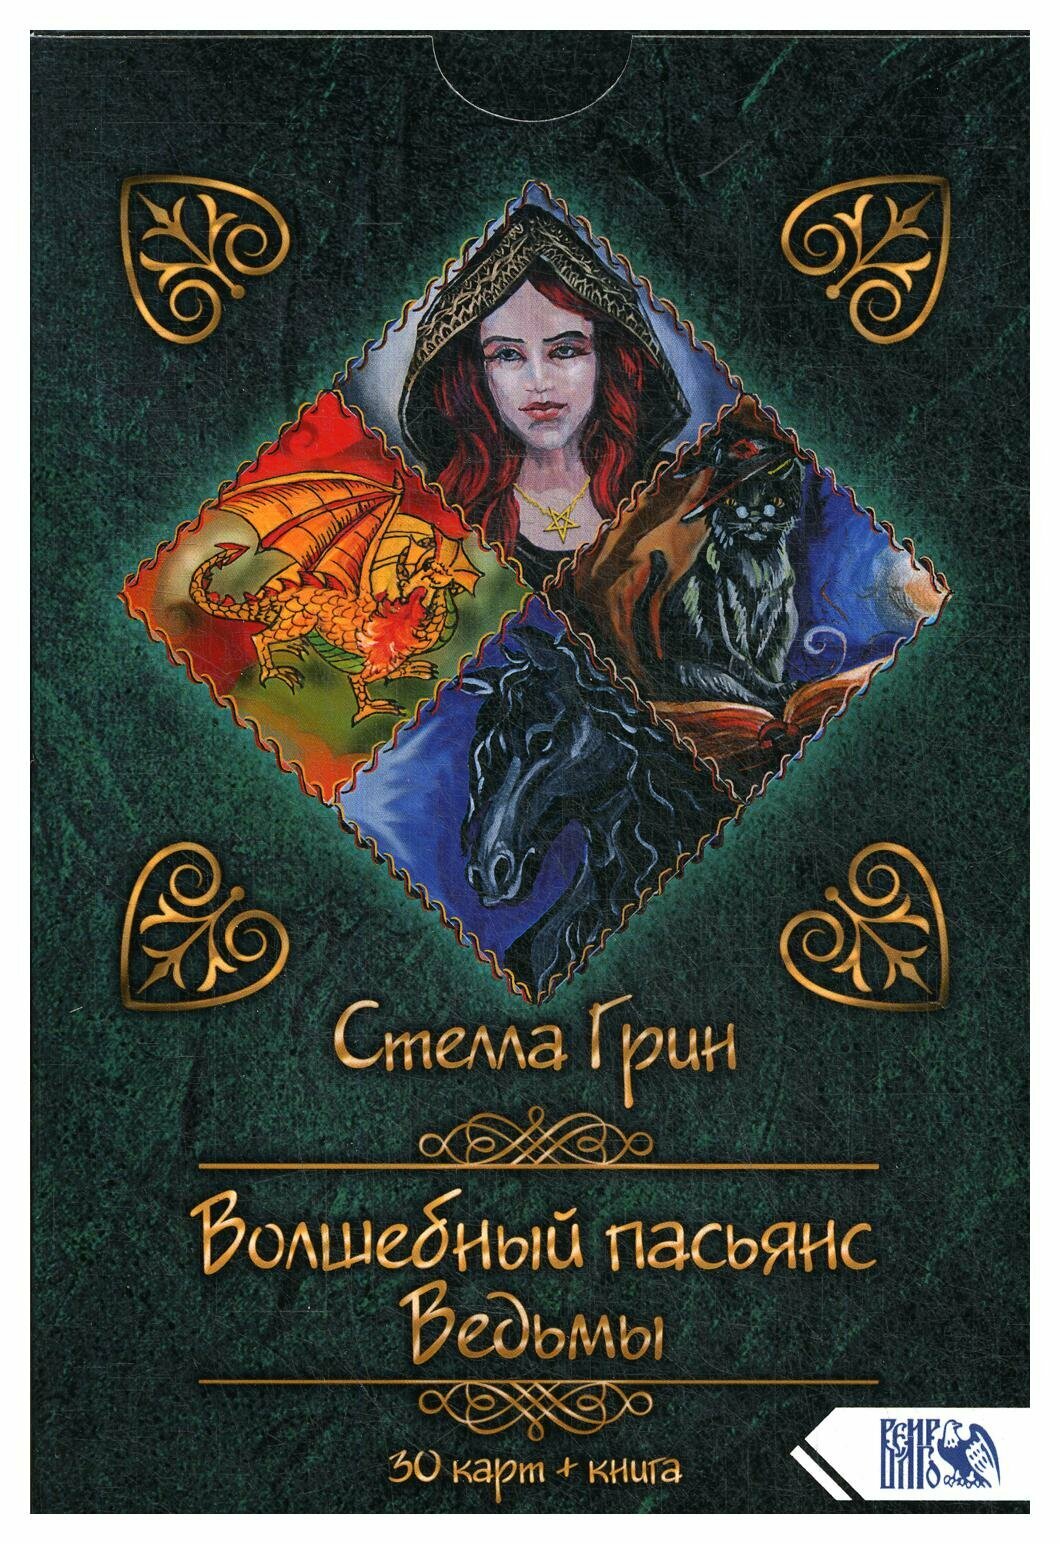 Волшебный пасьянс Ведьмы (30 карт + книга) - фото №2